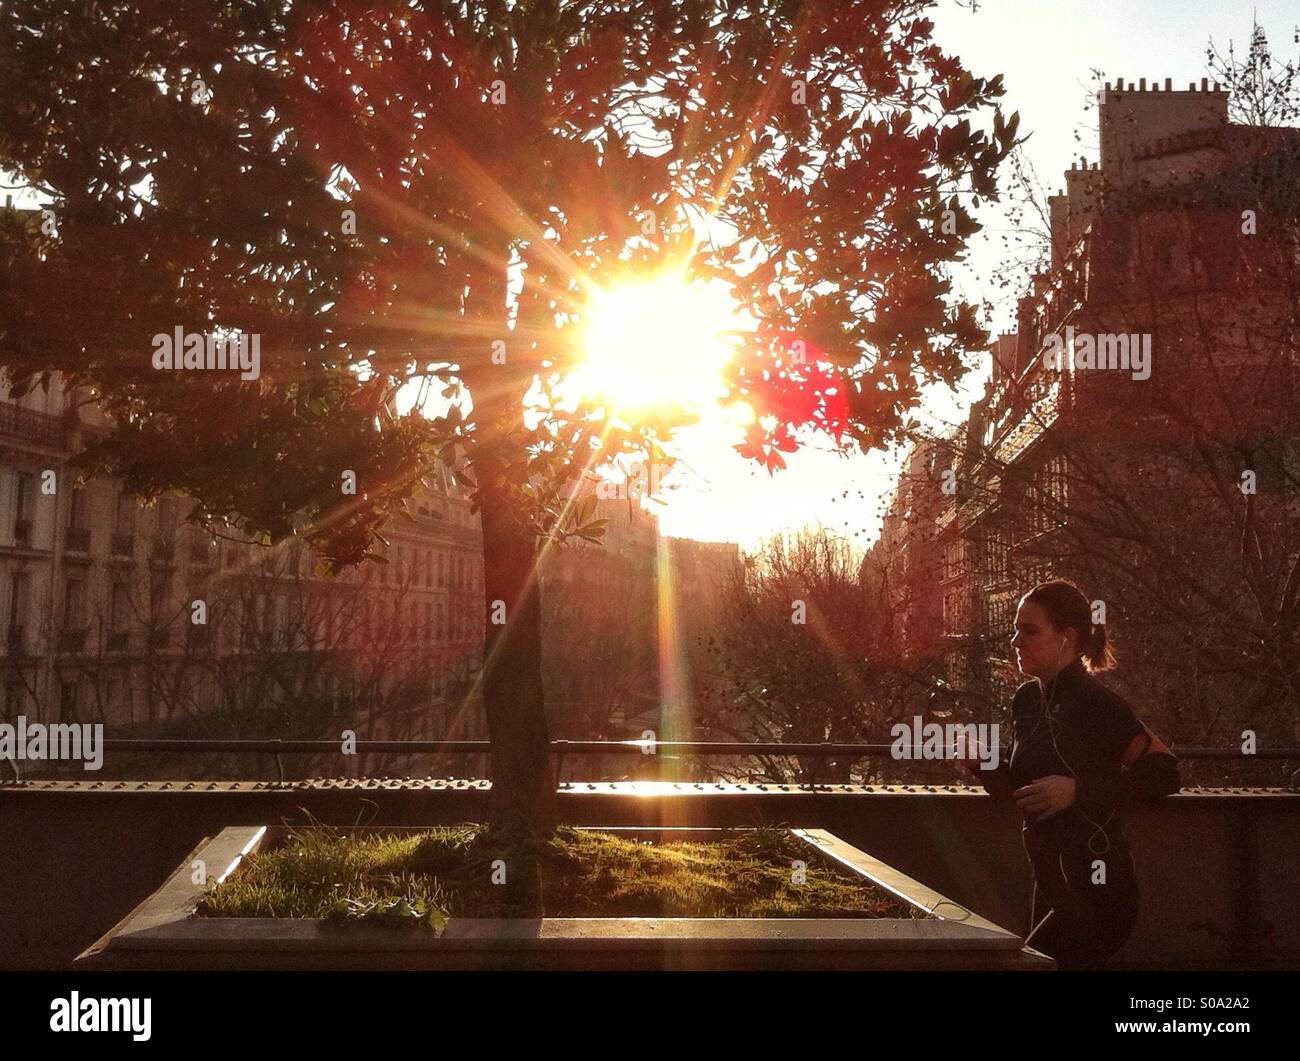 Un pareggiatore viene eseguito su in un parco durante un bellissimo tramonto. Foto Stock